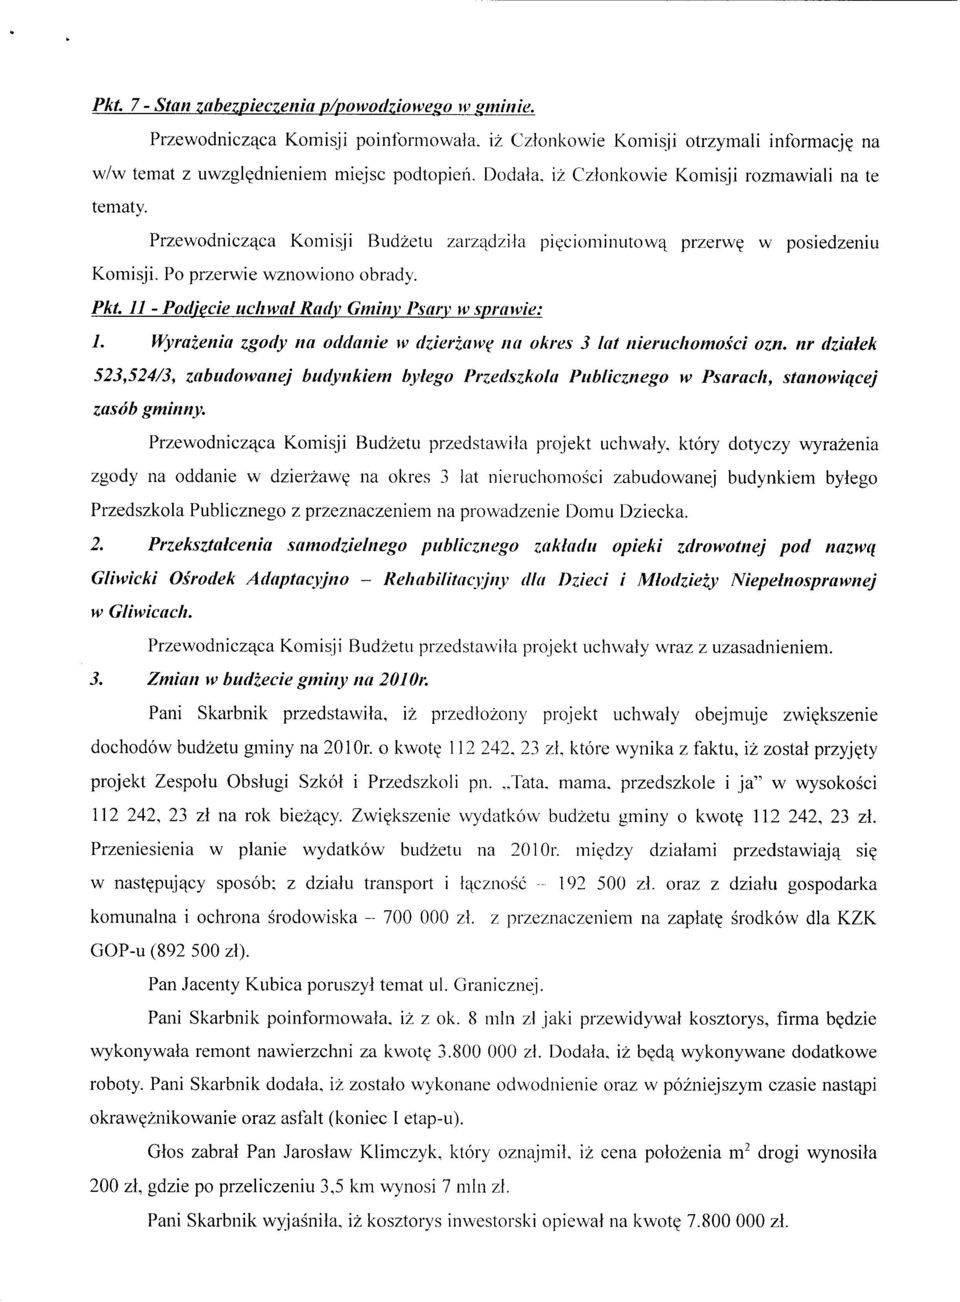 11 - Podjecie uchwal Rady Gminy Psary w sprawie: 1. Wyrazenia zgody na oddanie w dzierzawe na okres 3 lat nieruchomosci ozn.